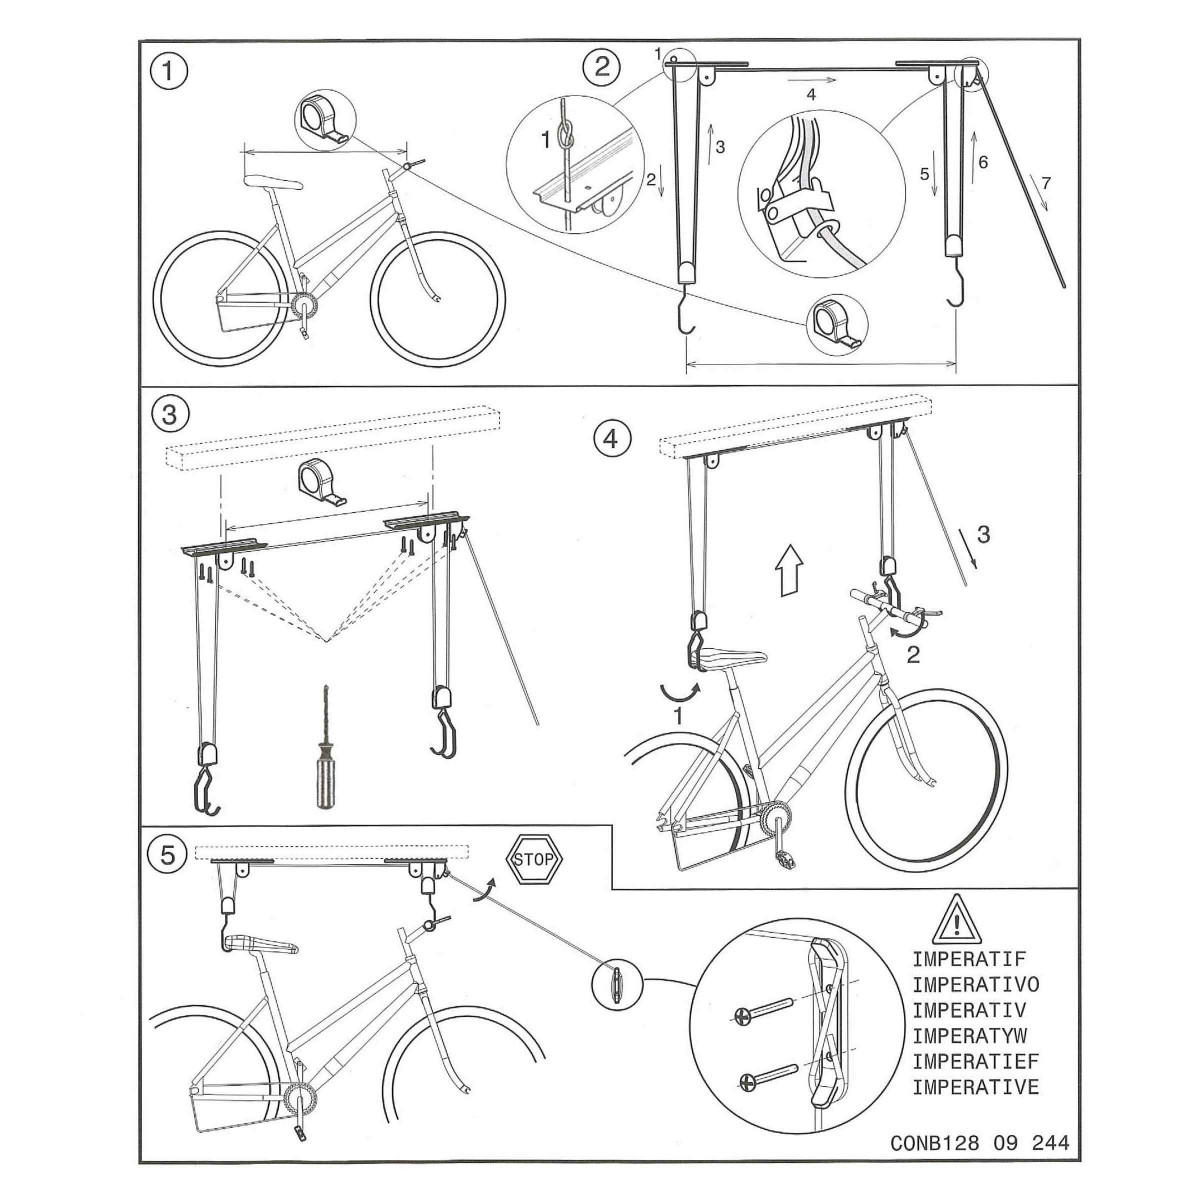 Support vélo plafond - 20 kg - Élévateur à poulie - Rangement vélo - Frein  autom